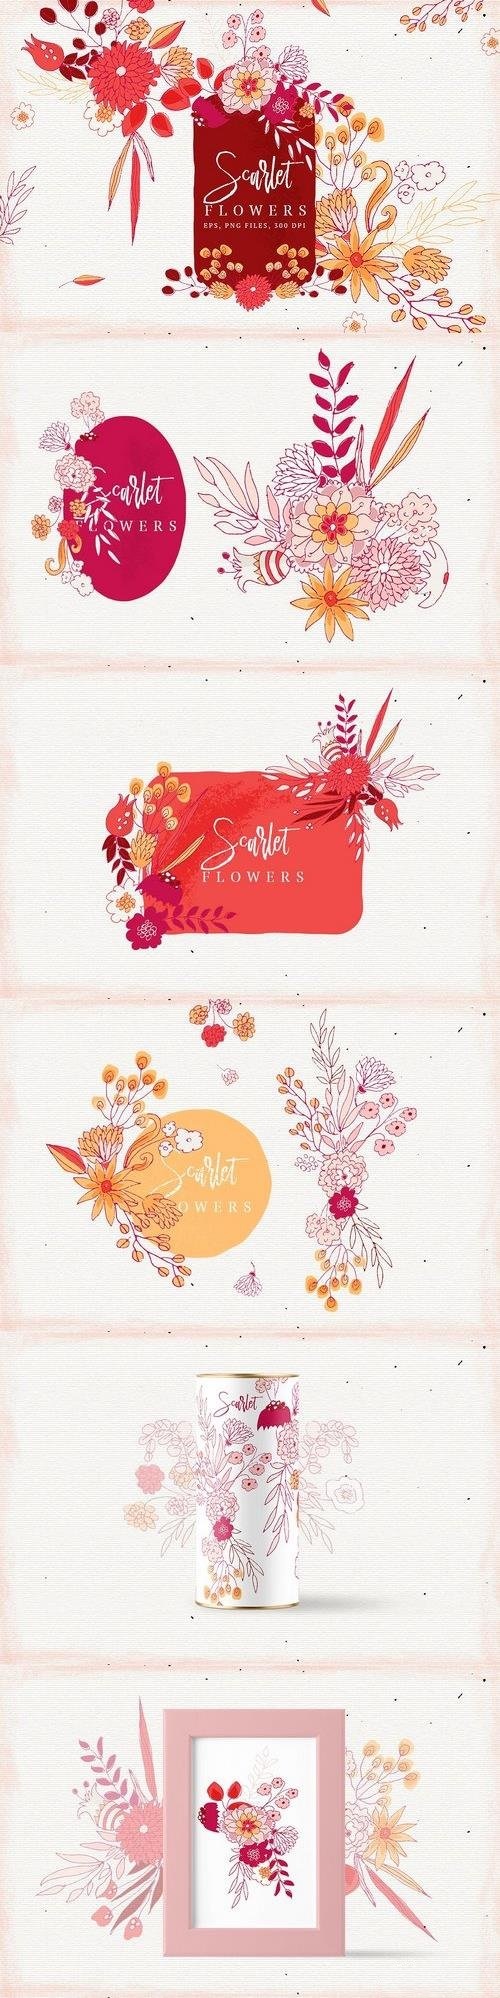 Scarlet Flowers - 1632471